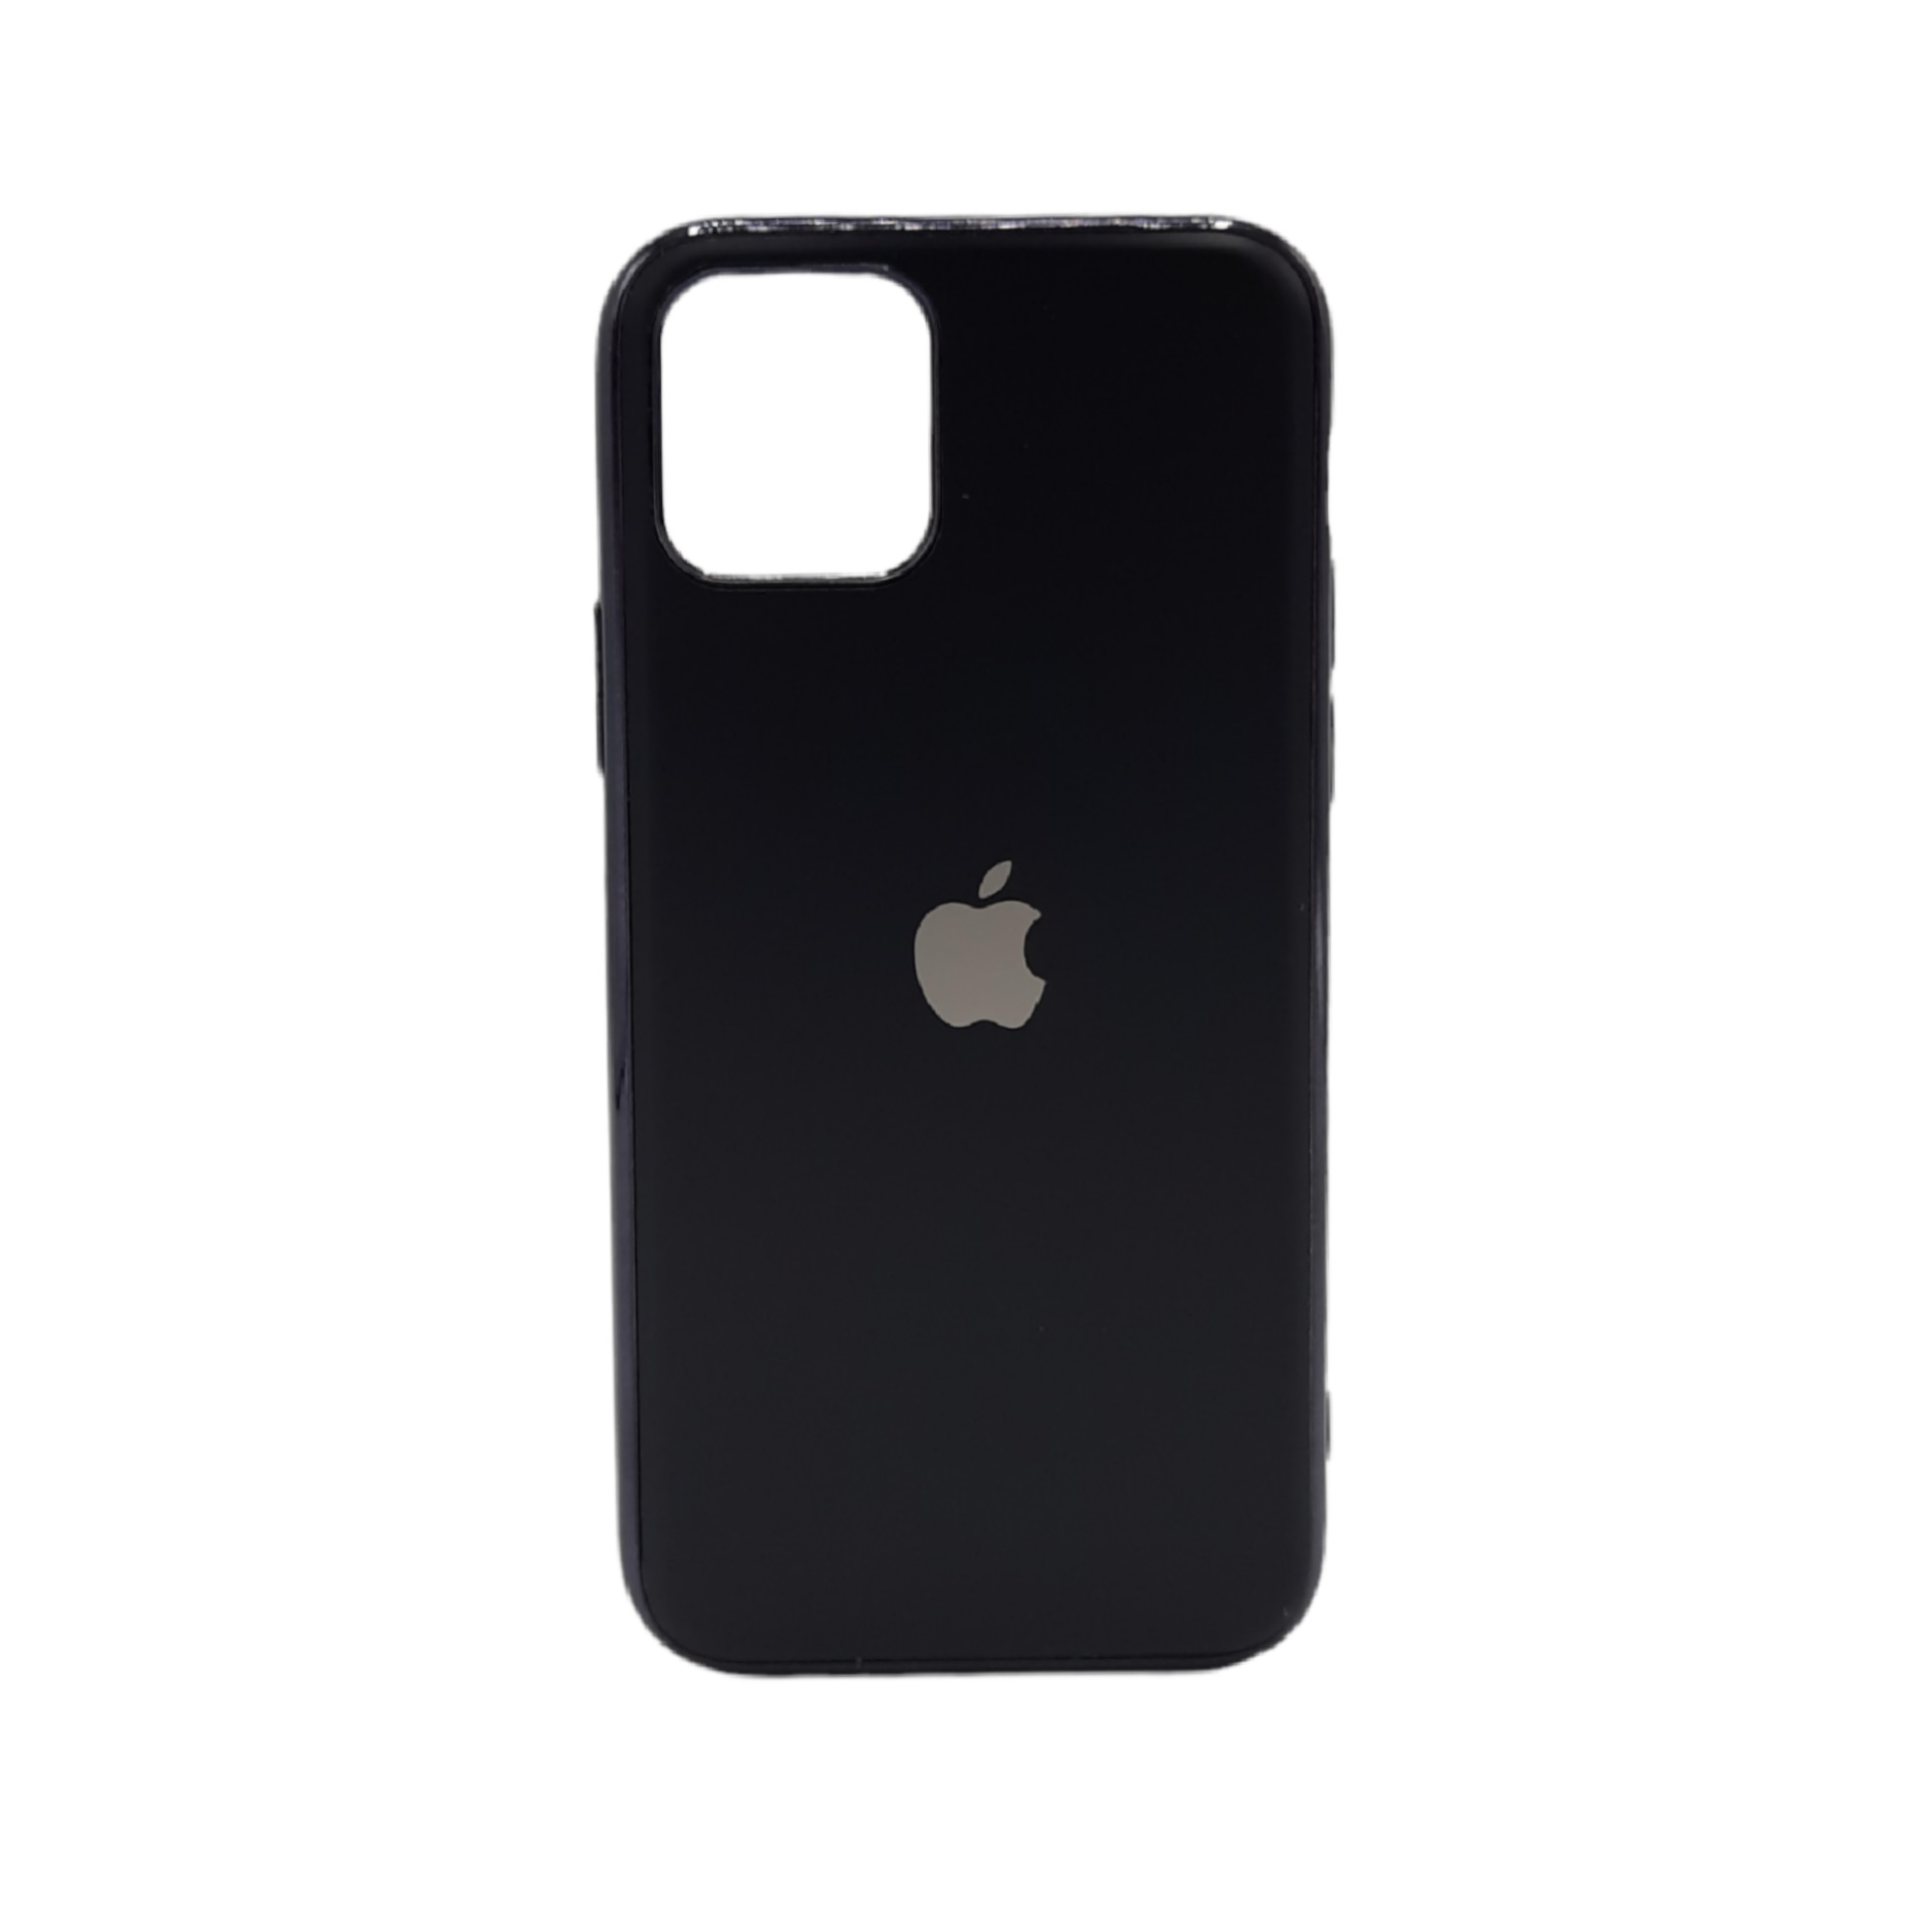 کاور مای کیس کد 045 مناسب برای گوشی موبایل اپل Iphone 11 pro Max